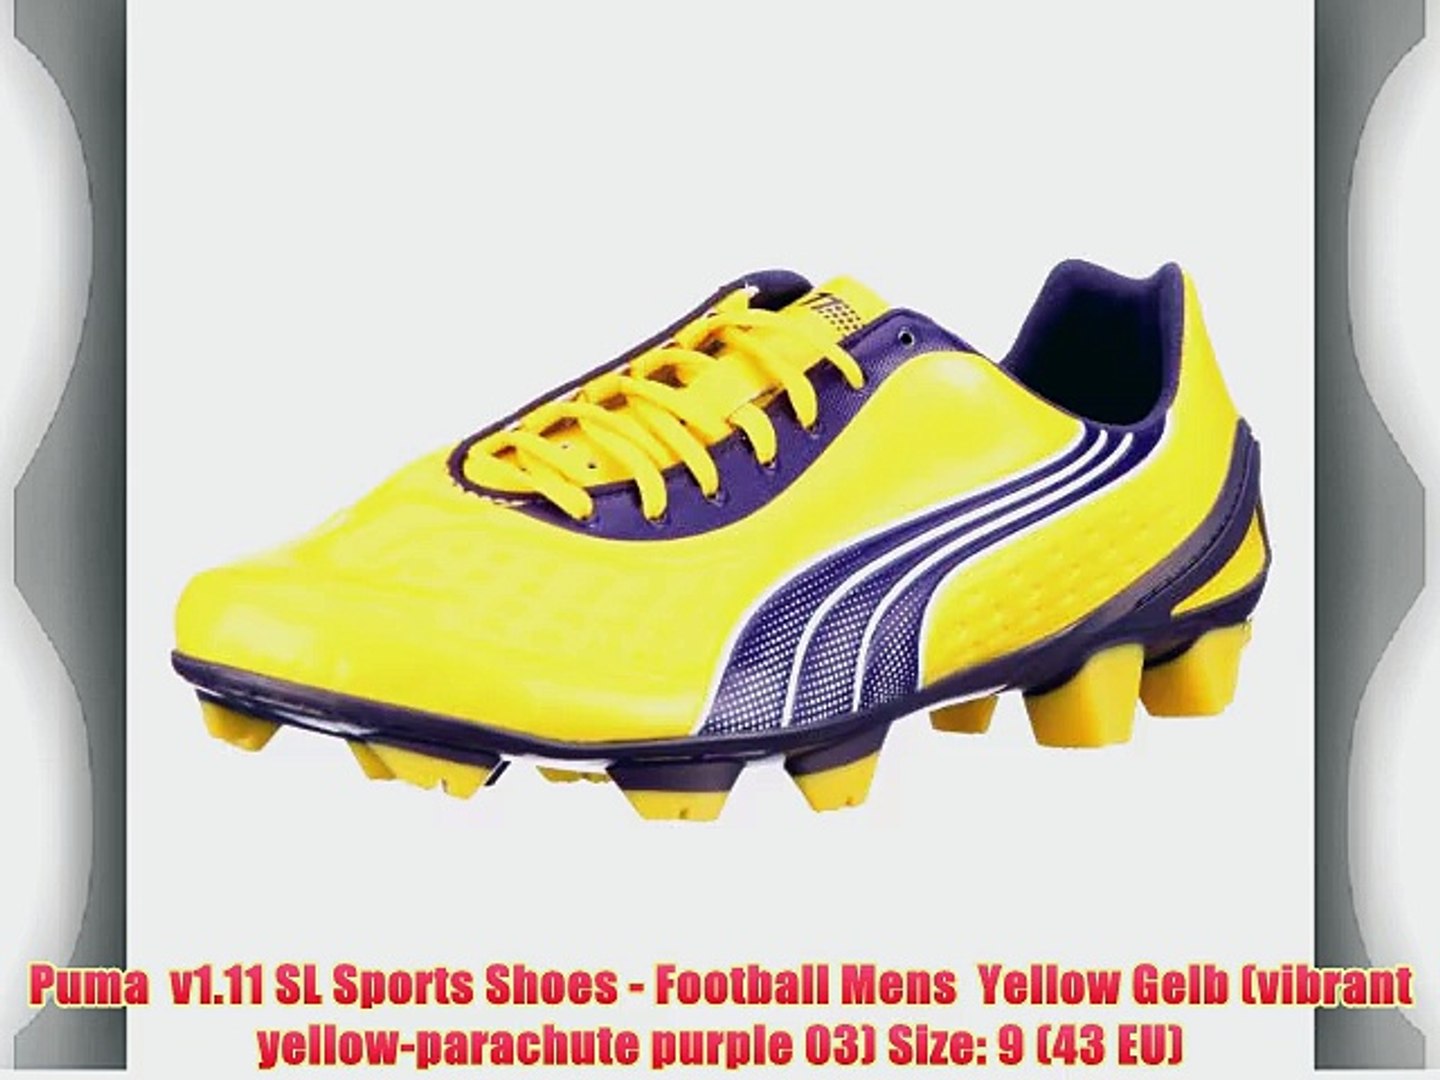 Puma V1 11 Sl Sports Shoes Football Mens Yellow Gelb Vibrant